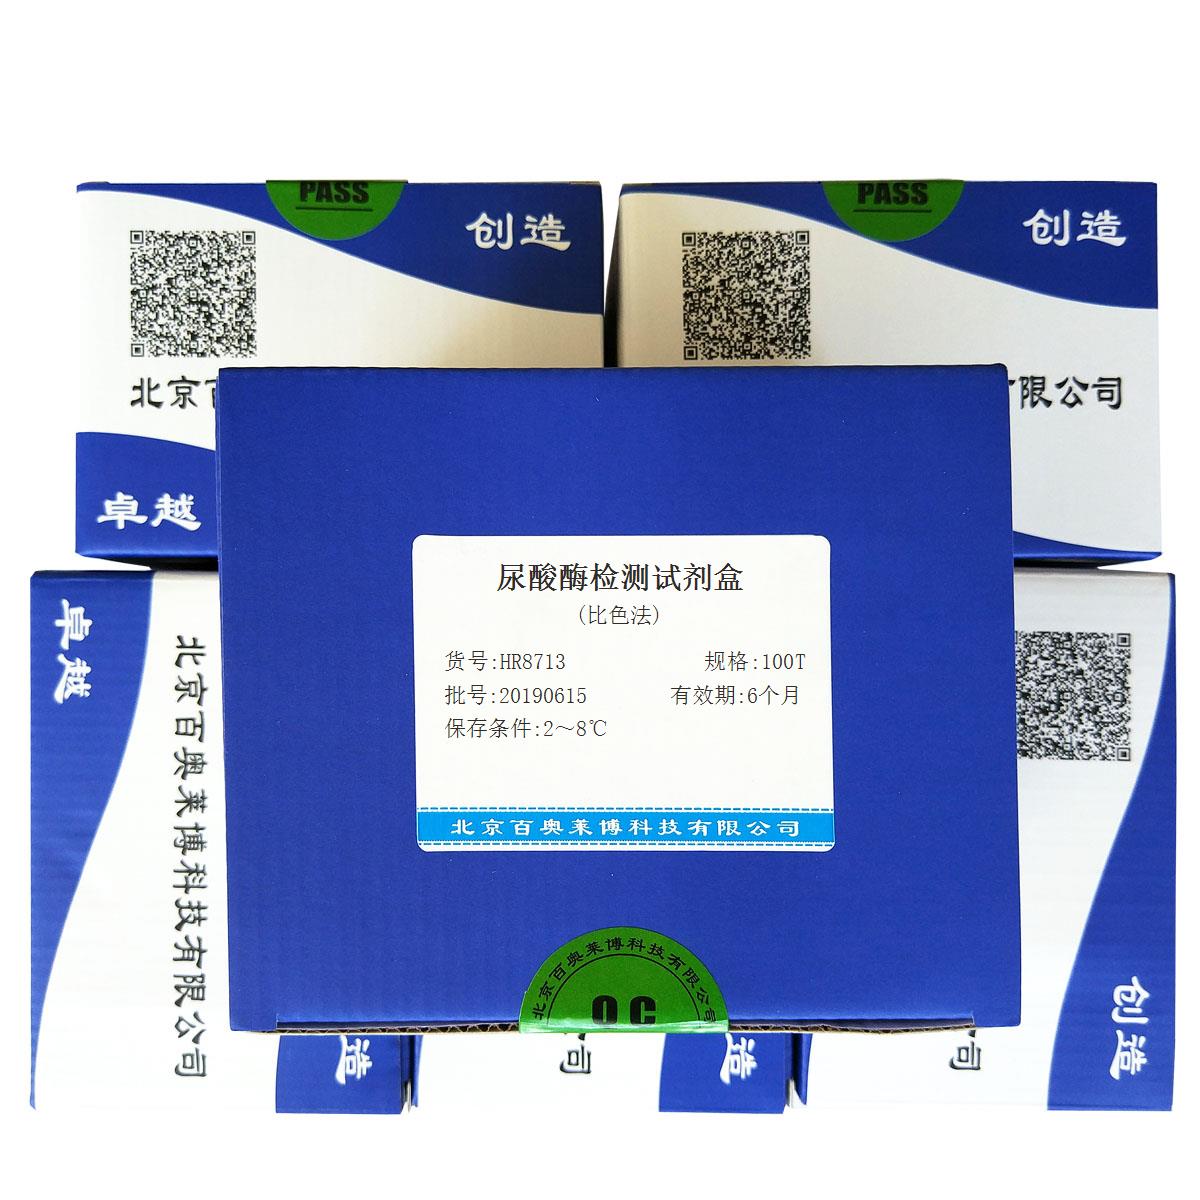 尿酸酶检测试剂盒(比色法)北京厂家